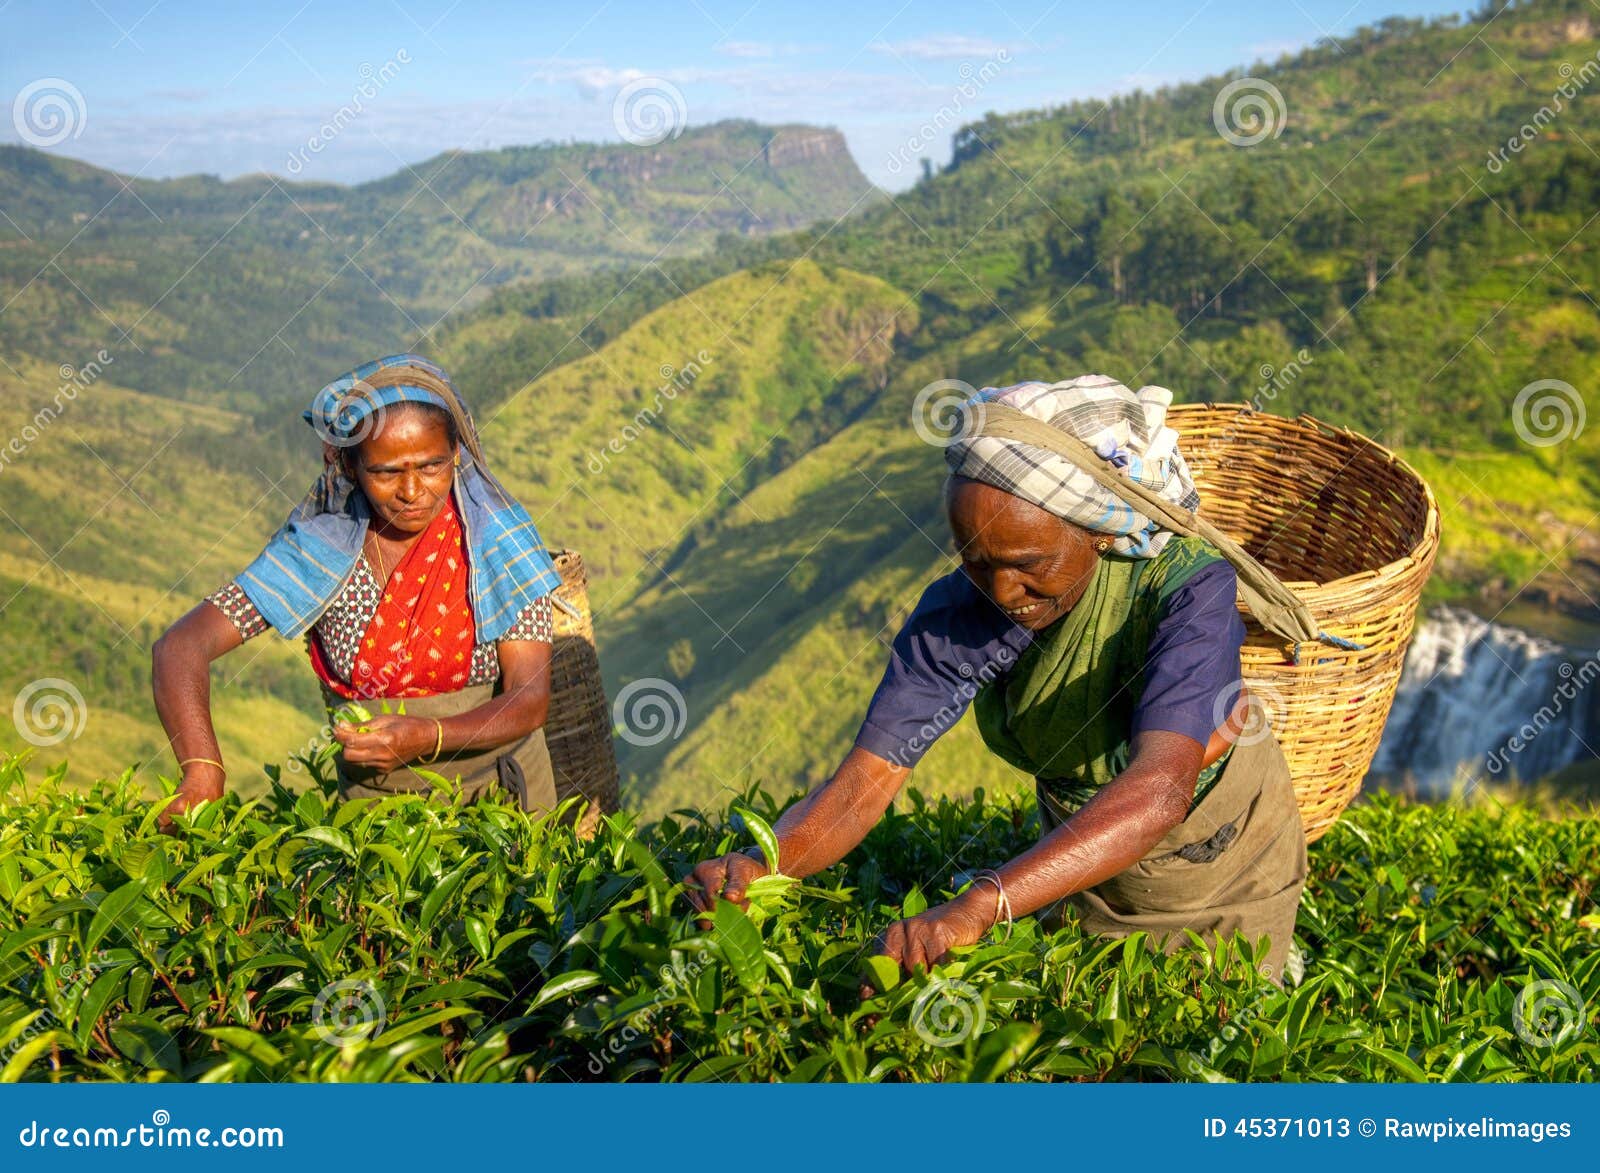 women tea pickers in sri lanka